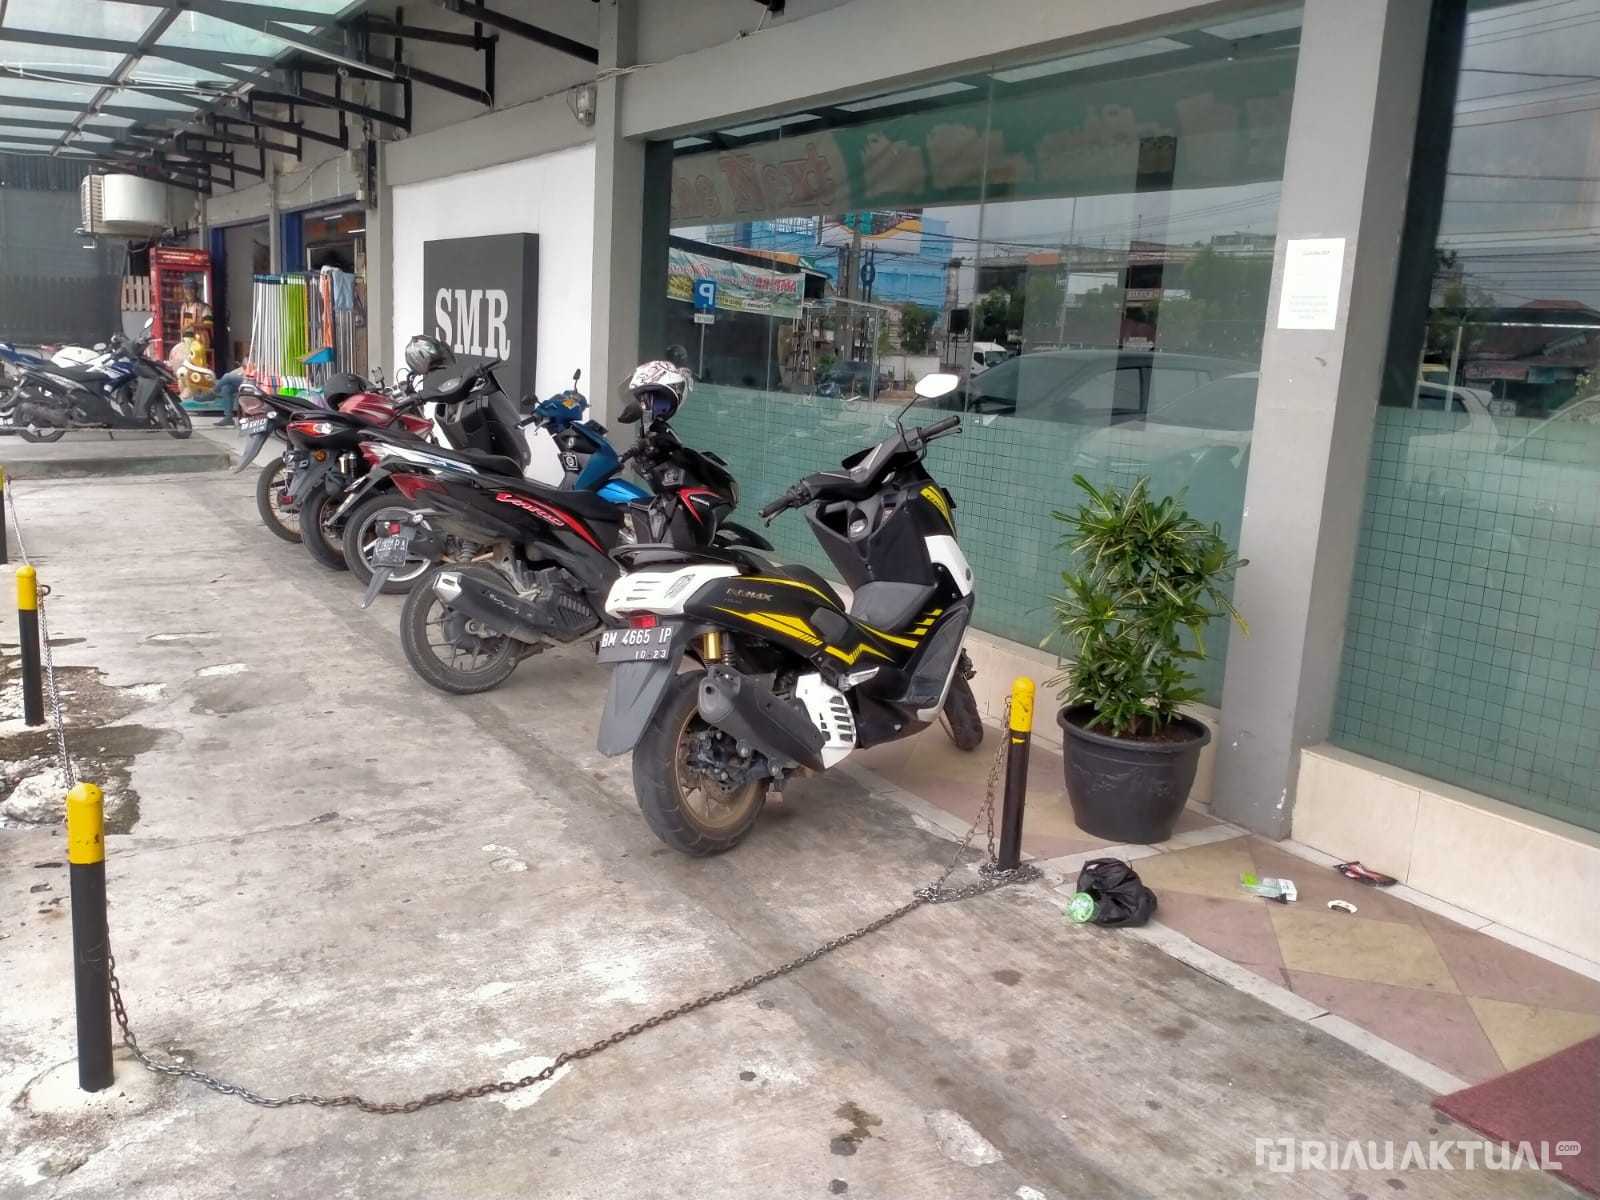 Sistem Keamanan Lemah, Tamu Wisma SMR Kehilangan Sepeda Motor